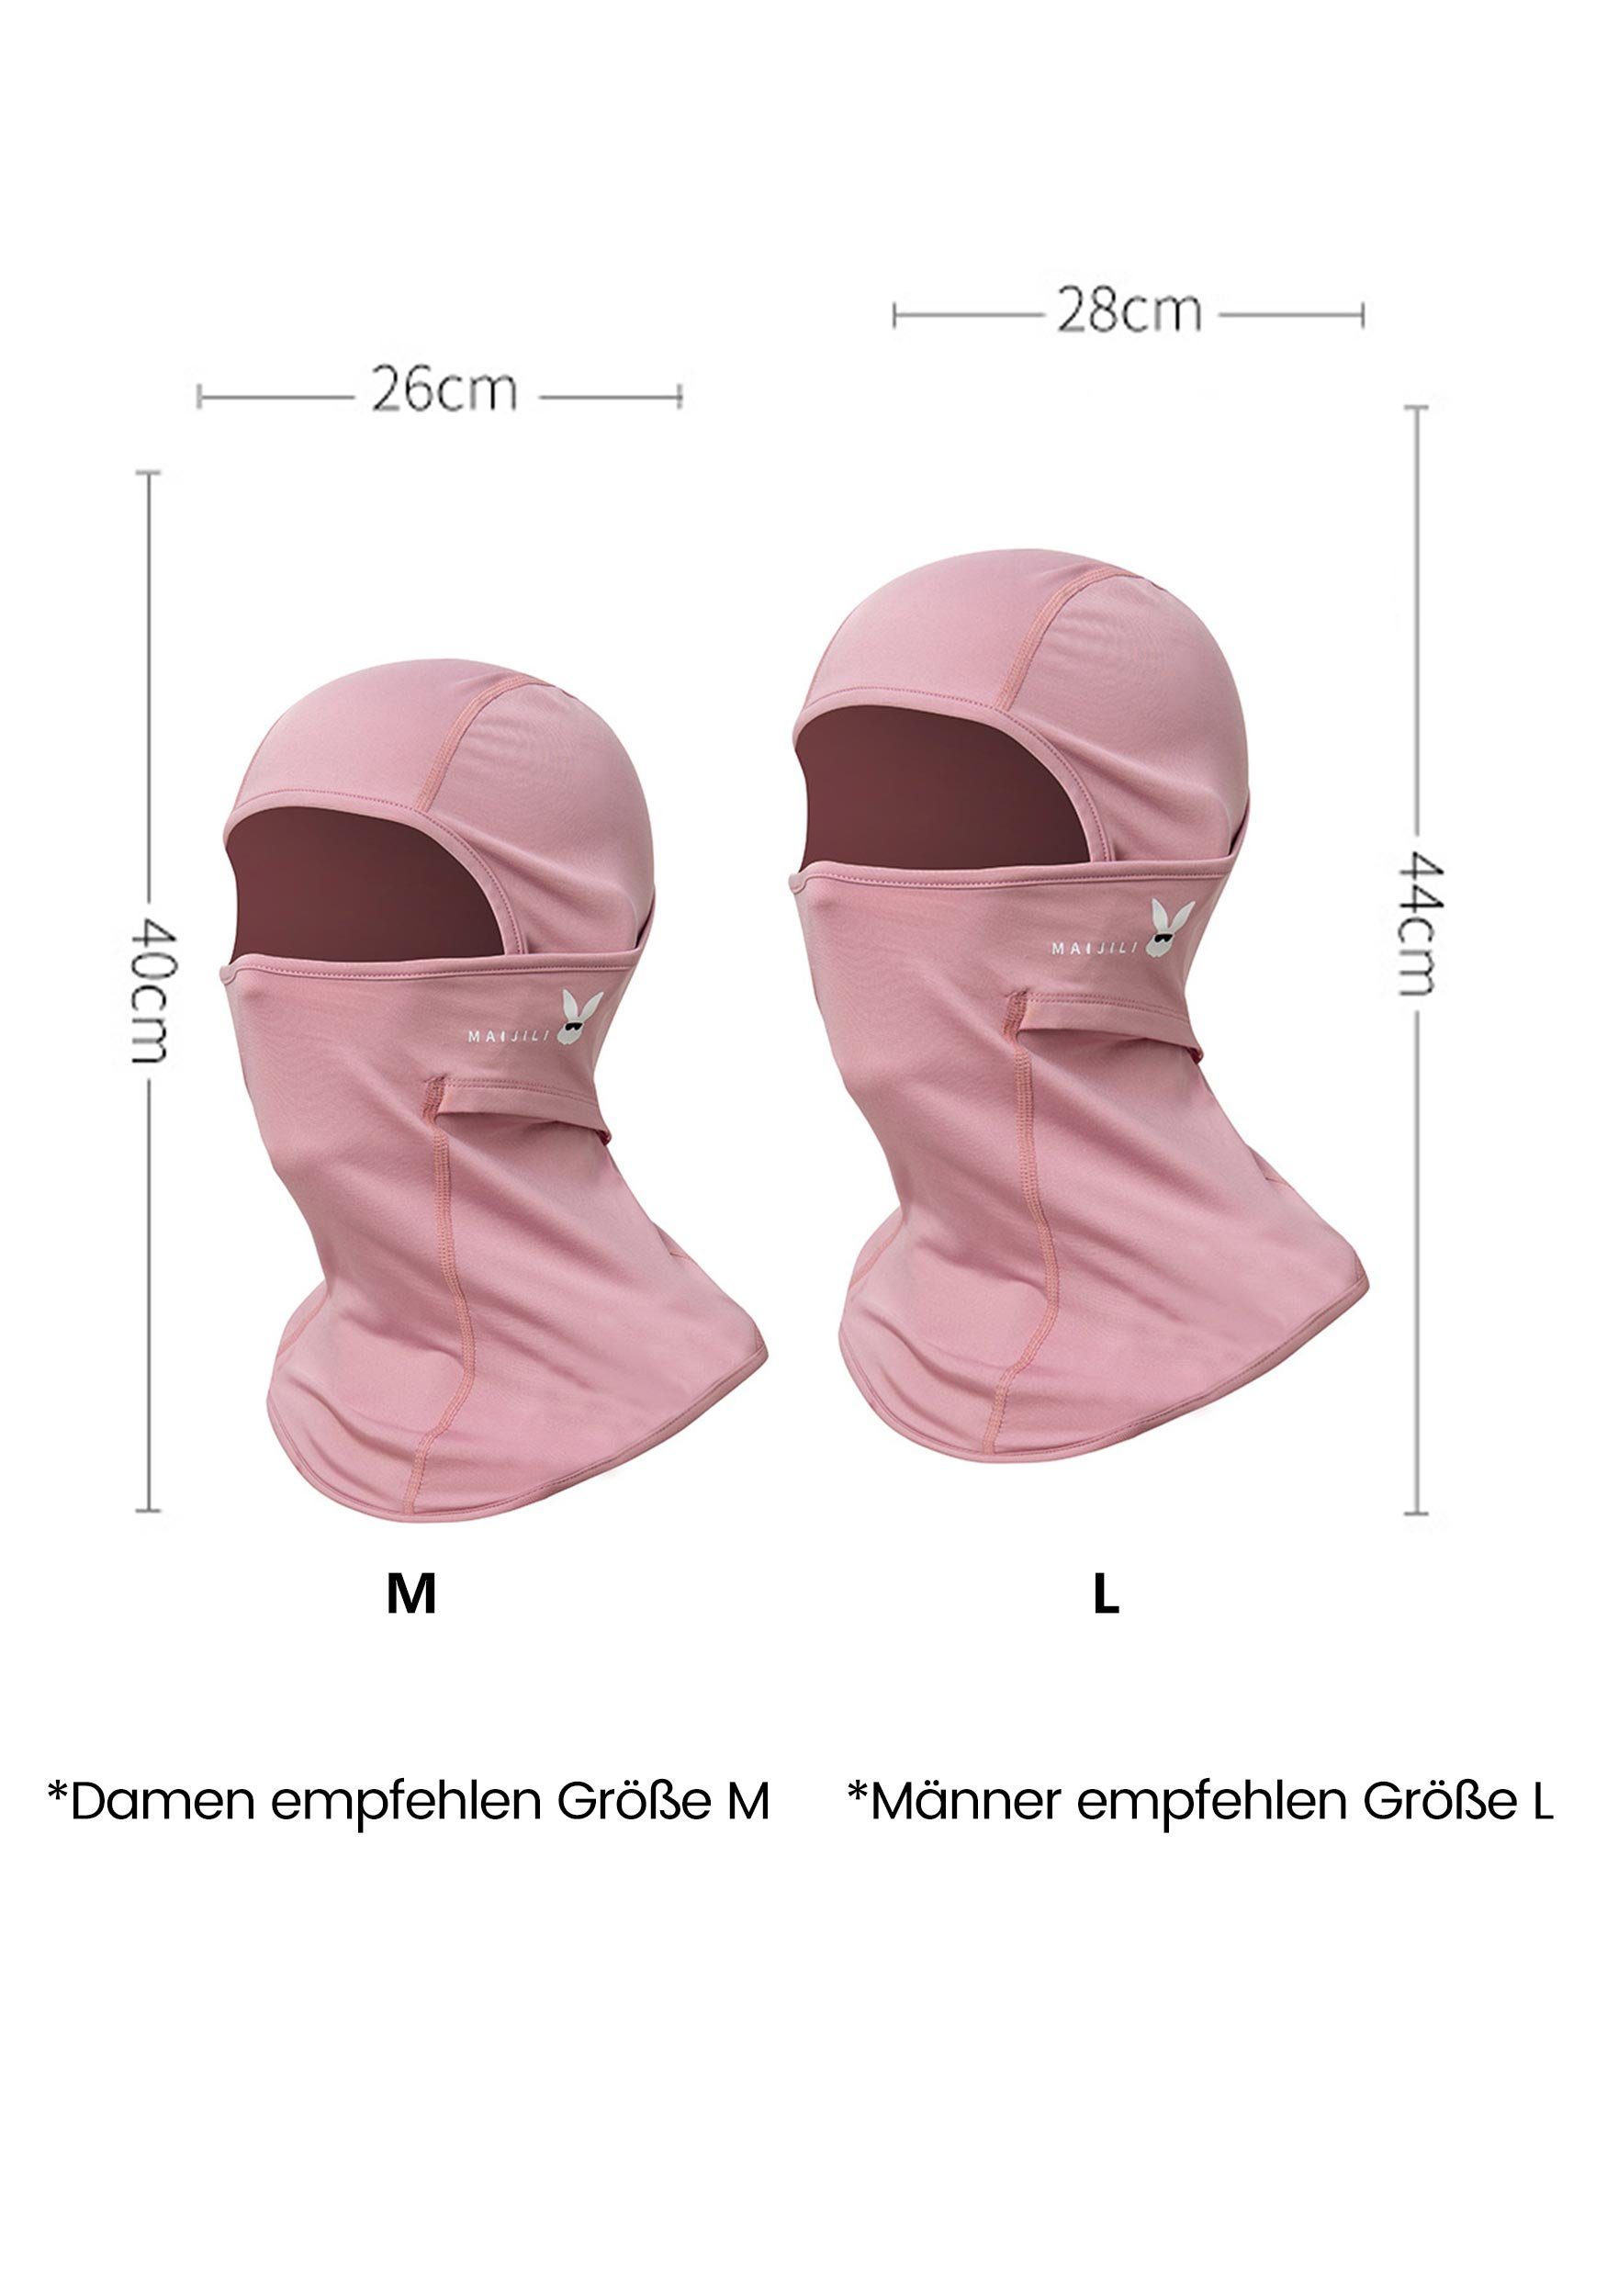 Schutz Widersteht Sturmhaube für UV-Strahlen Skimaske Rosa Umfassenden MAGICSHE